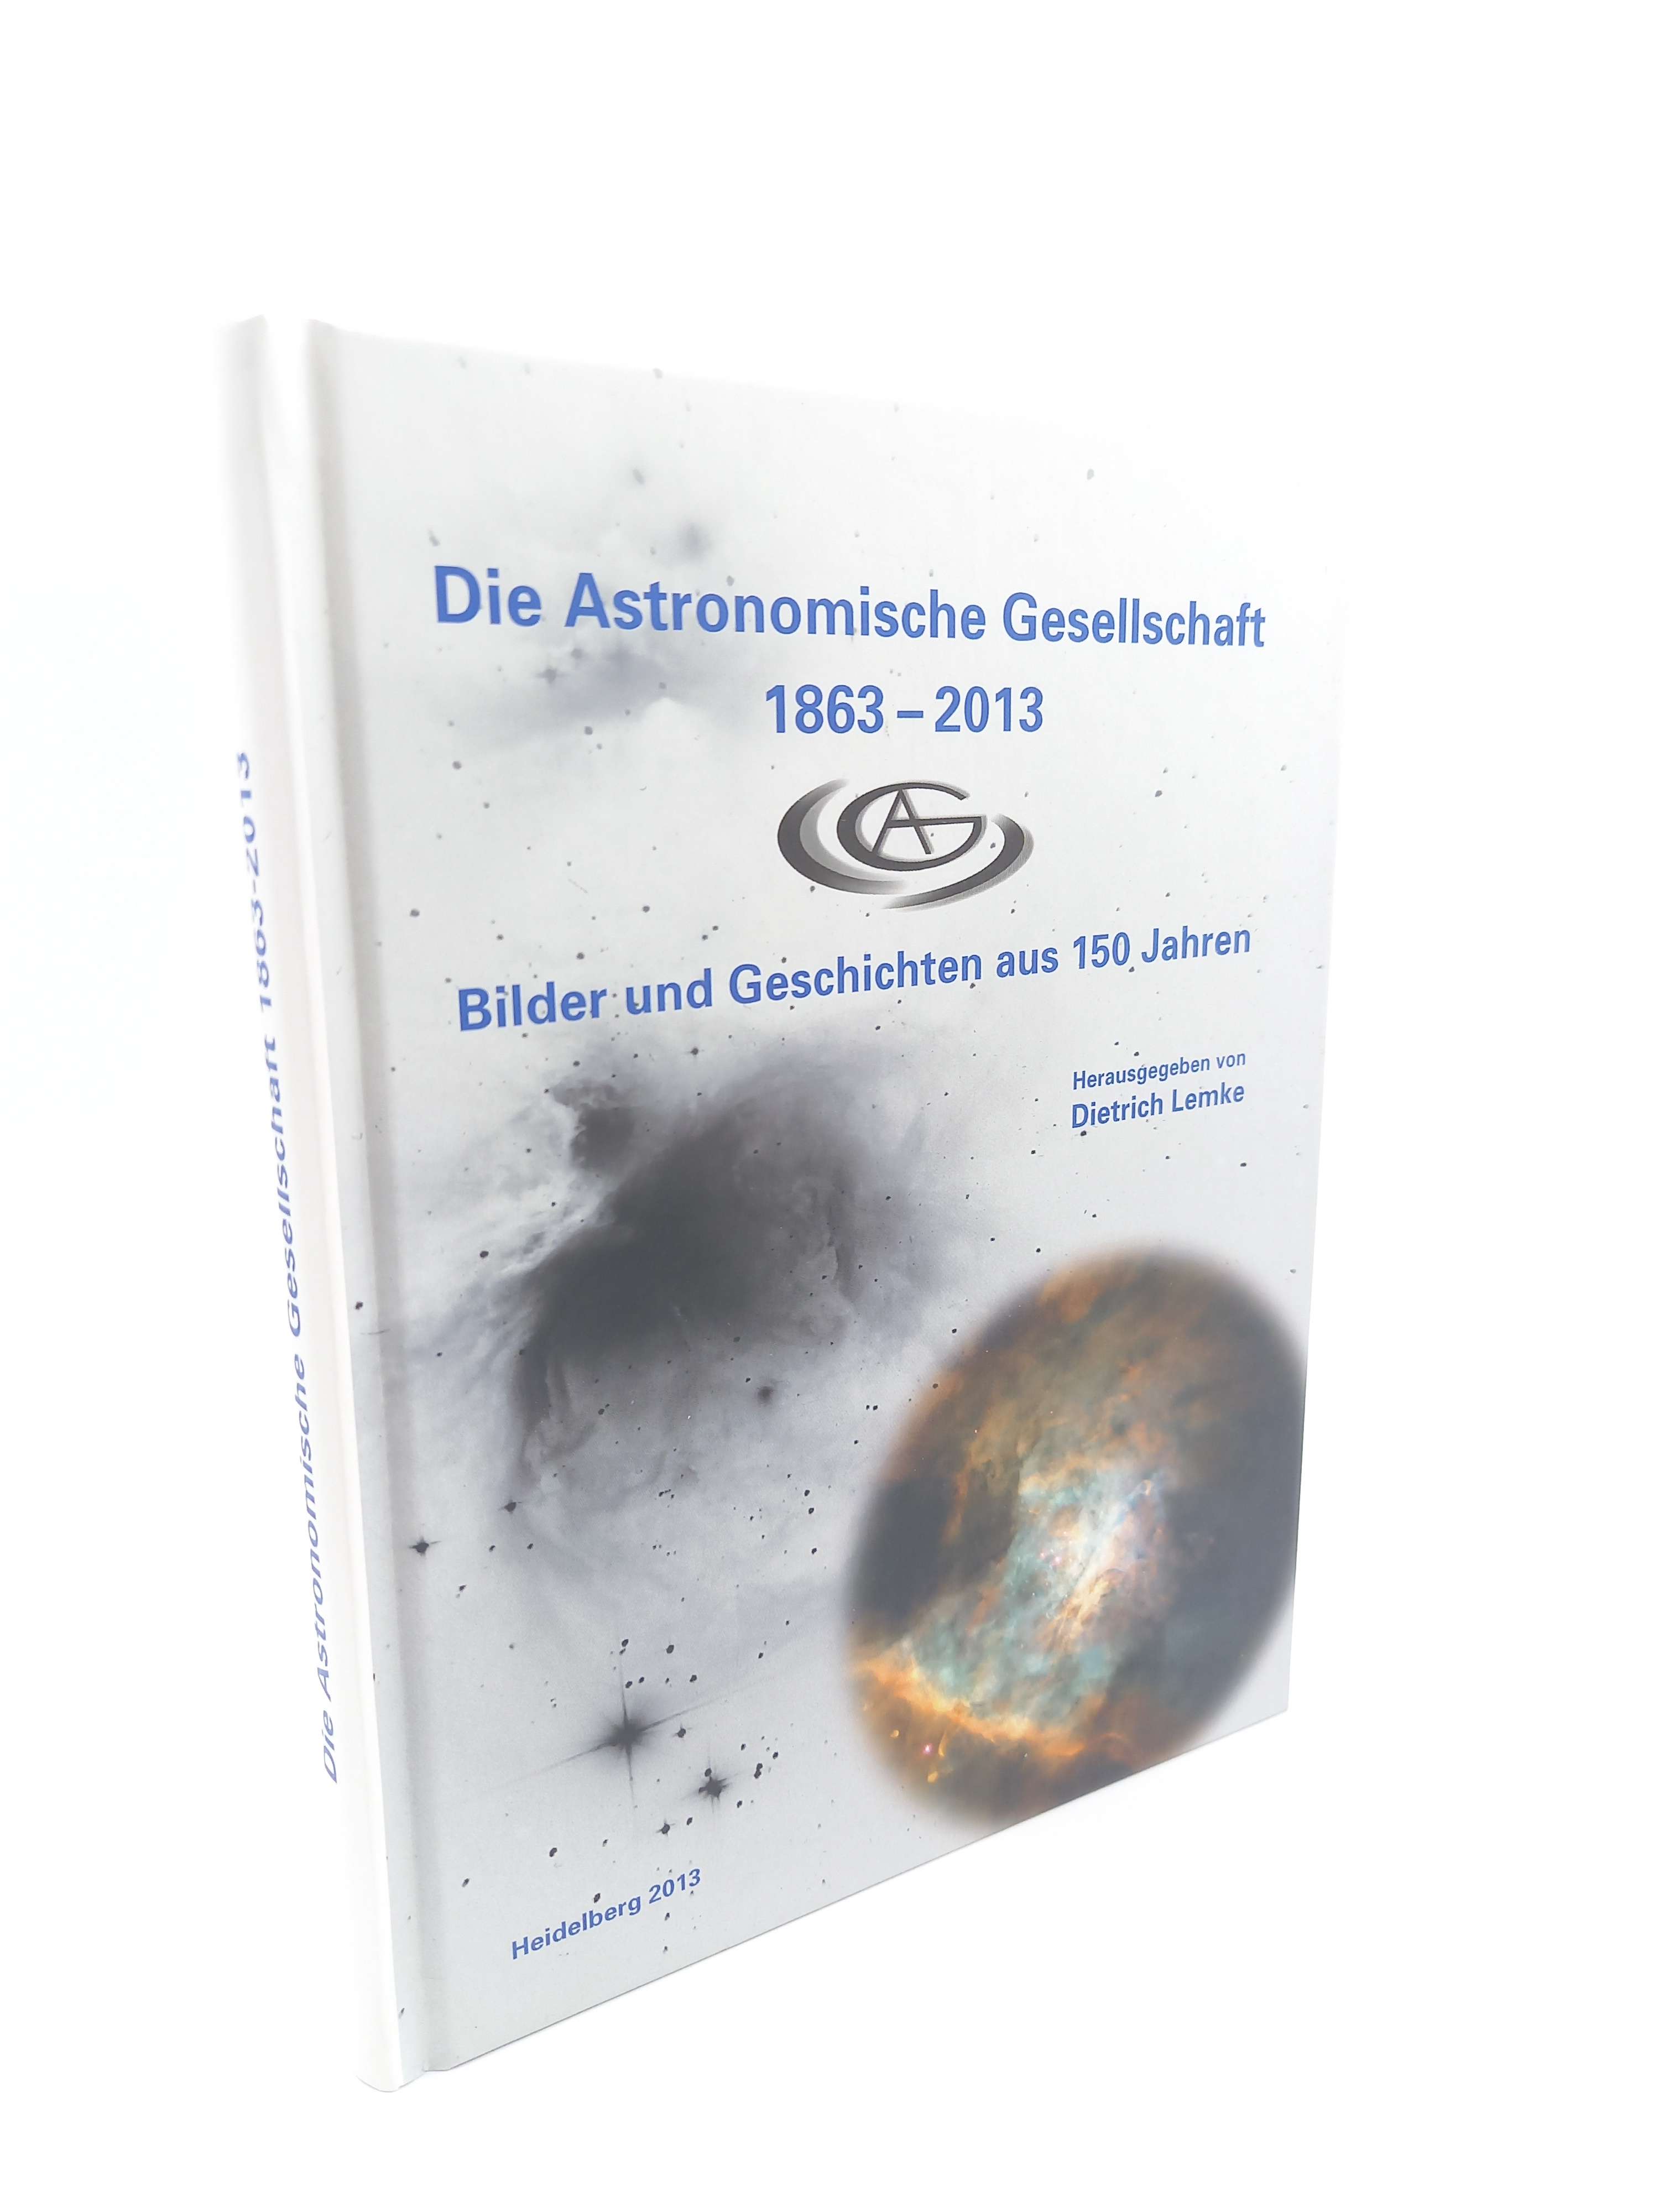 Die Astronomische Gesellschaft 1863 - 2013: Geschichten und Bilder aus 150 Jahren